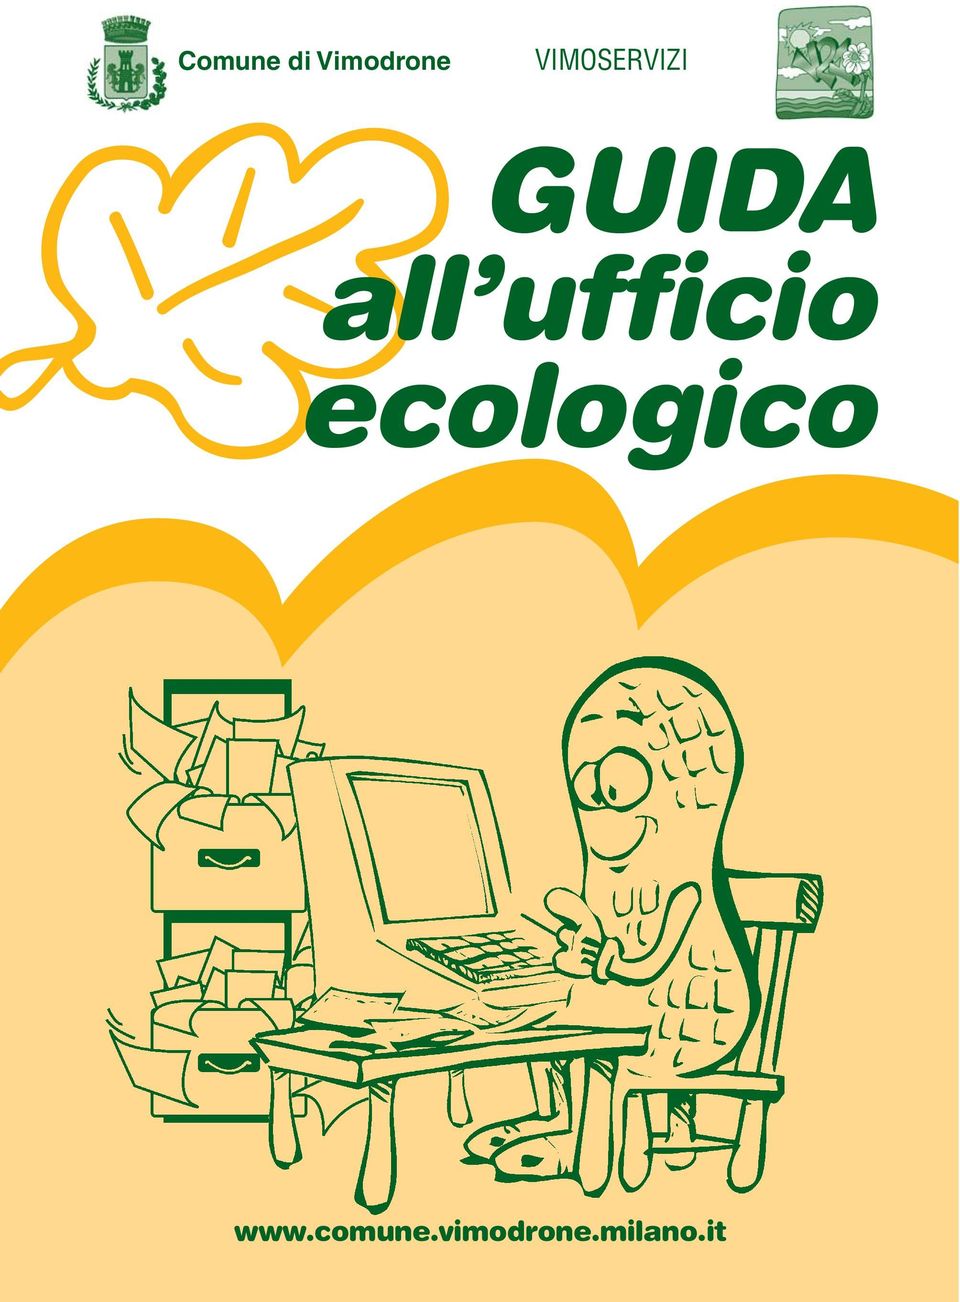 ufficio ecologico www.